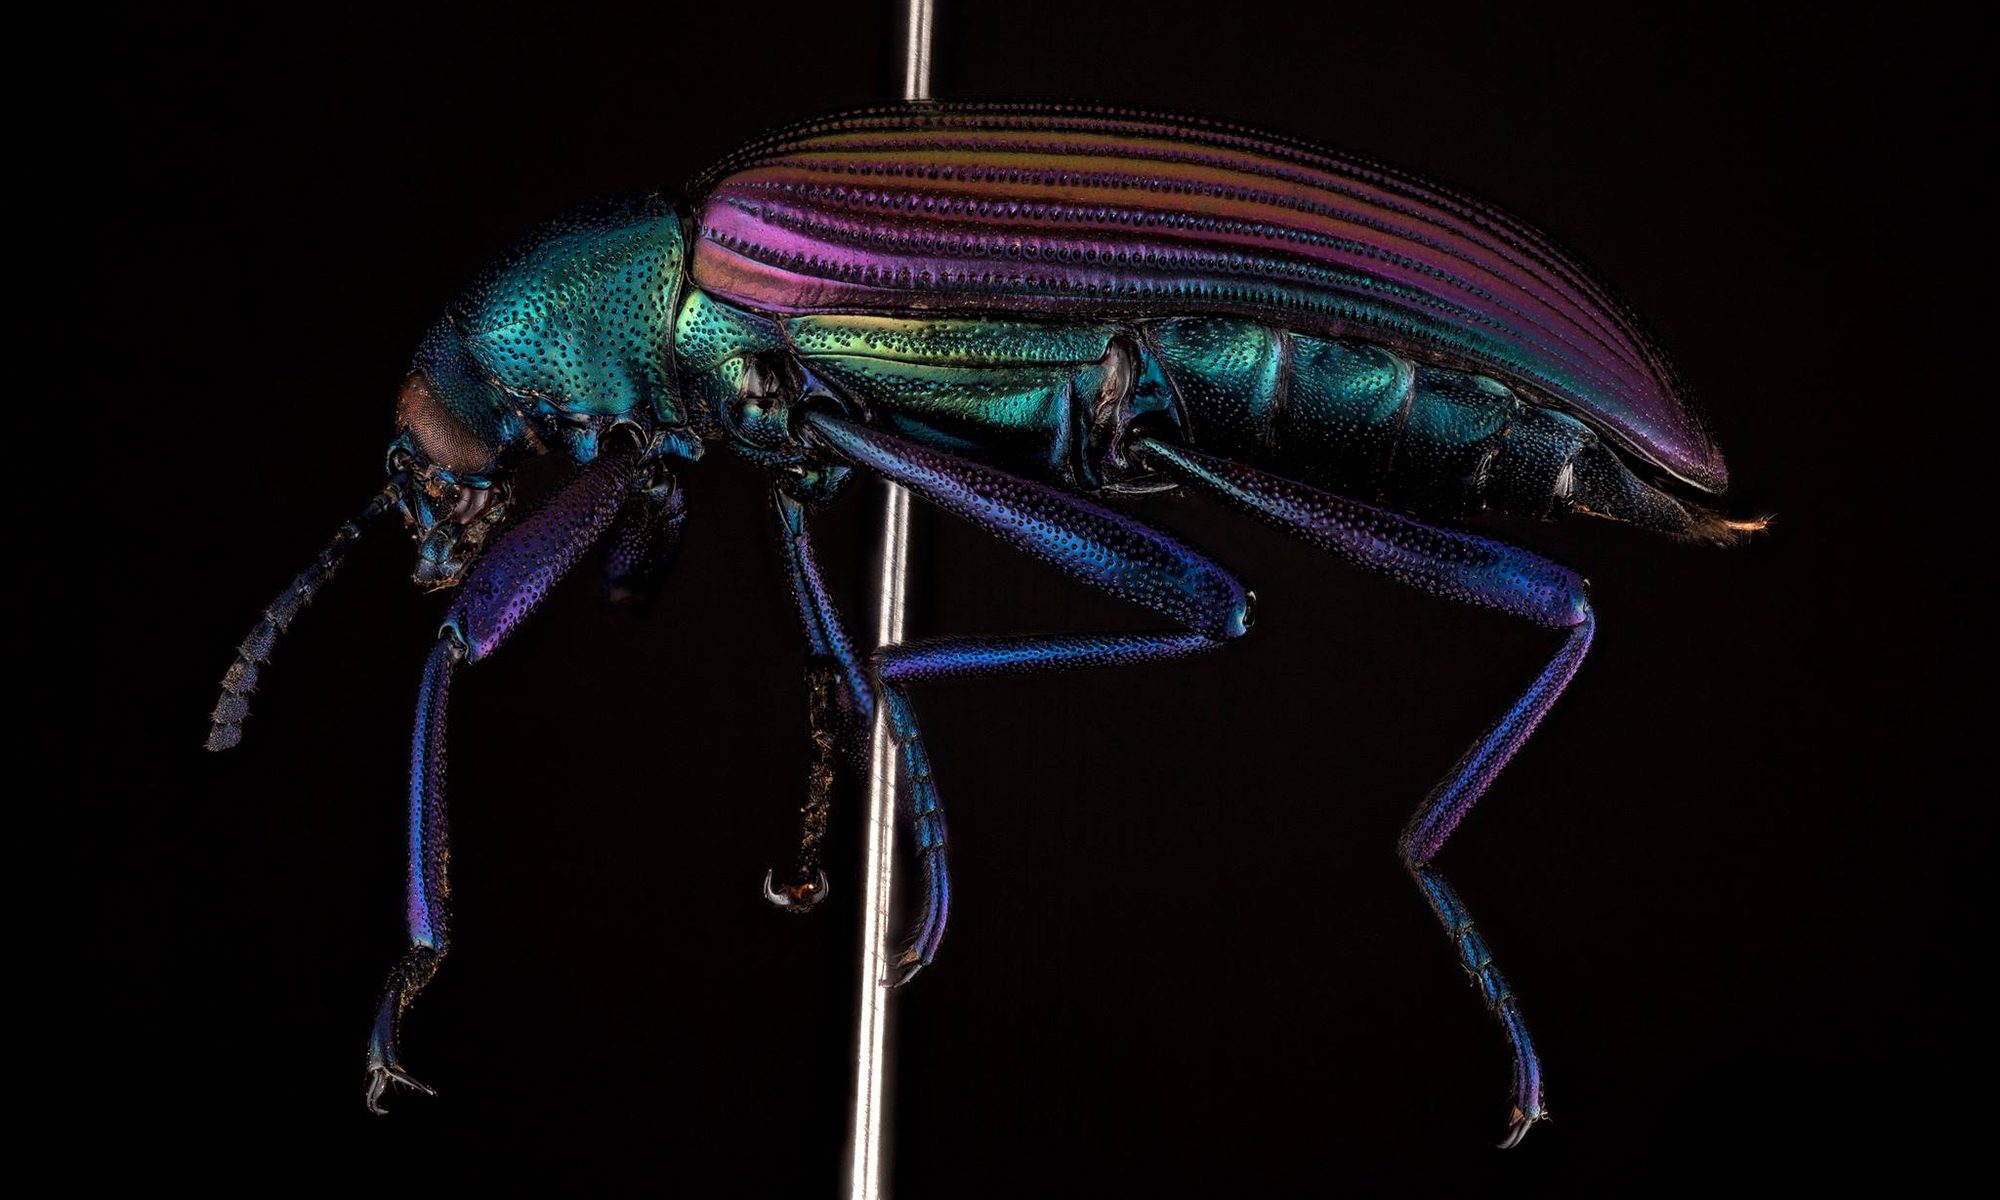 beetle on pin, closeup